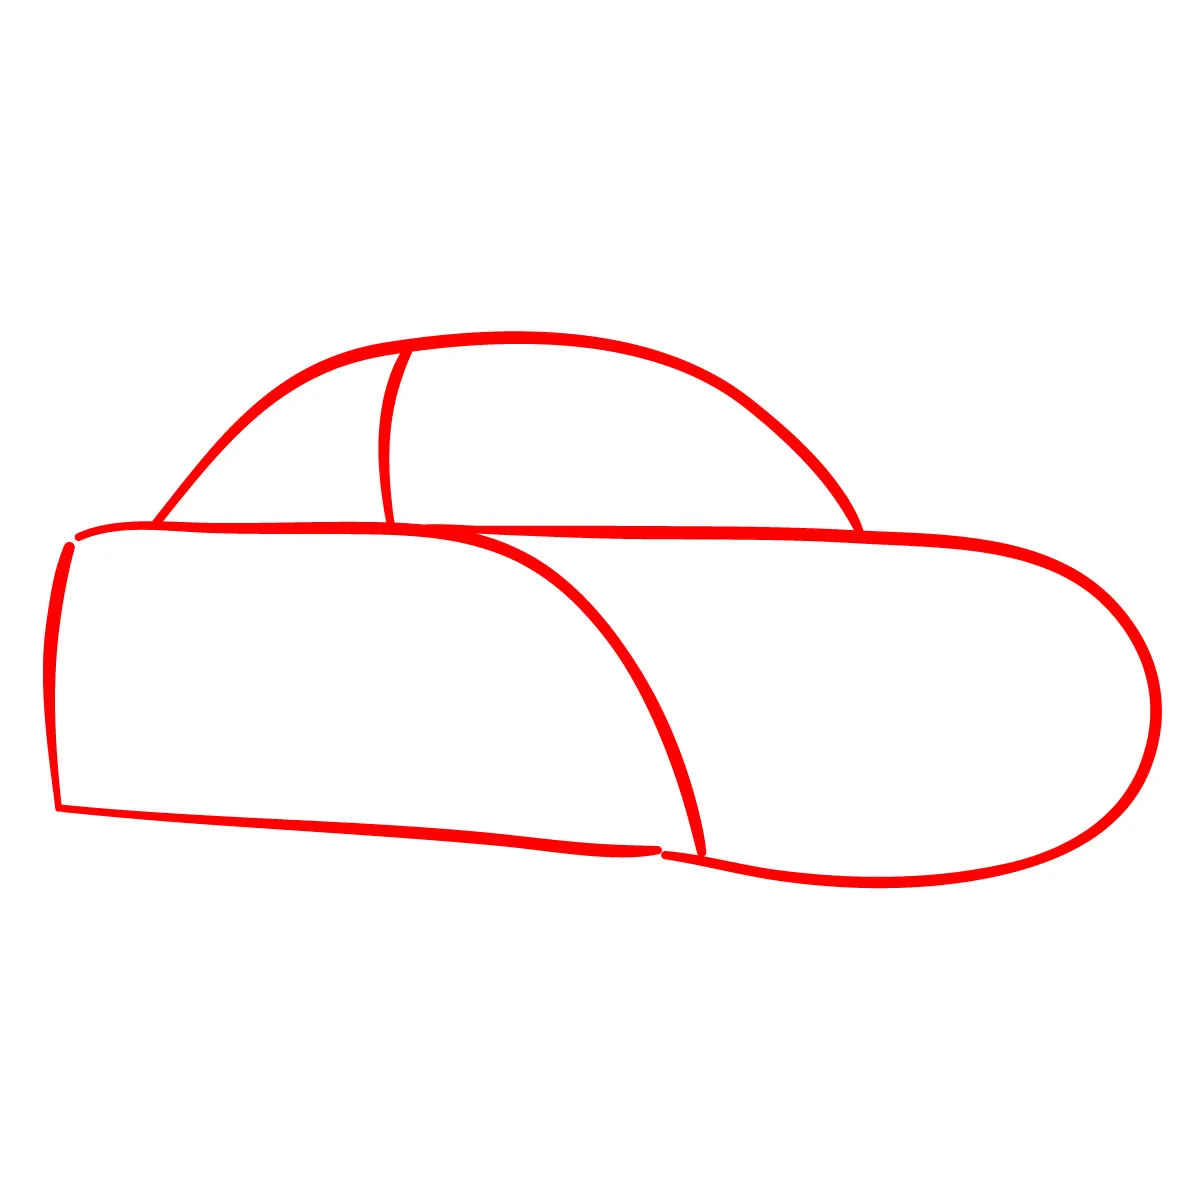 Ô tô mơ ước  Hướng dẫn vẽ ô tô mơ ước  Draw a dream car  KC art  YouTube